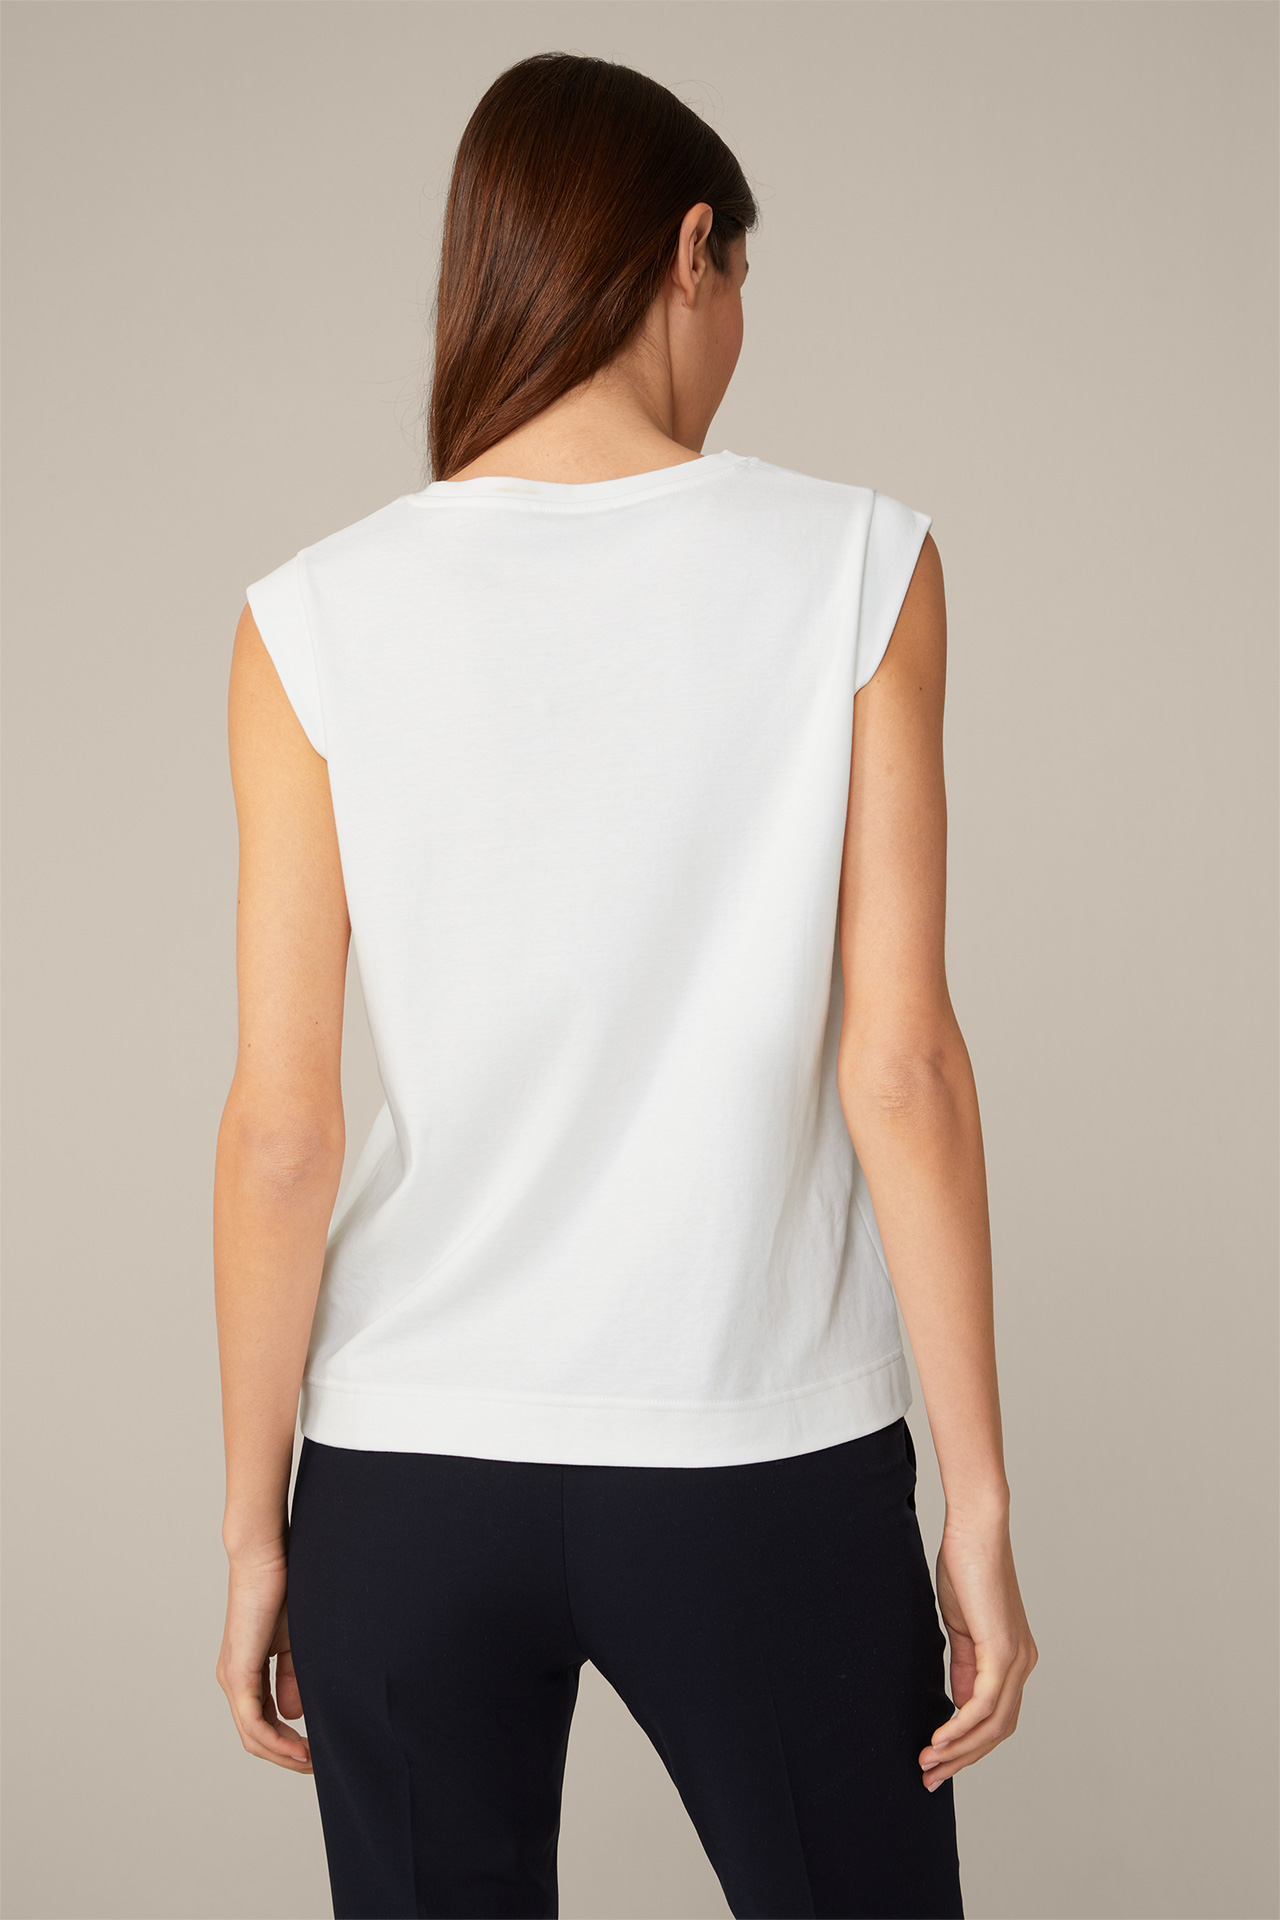 Baumwoll-Interlock-Shirt ohne Arm in Weiß